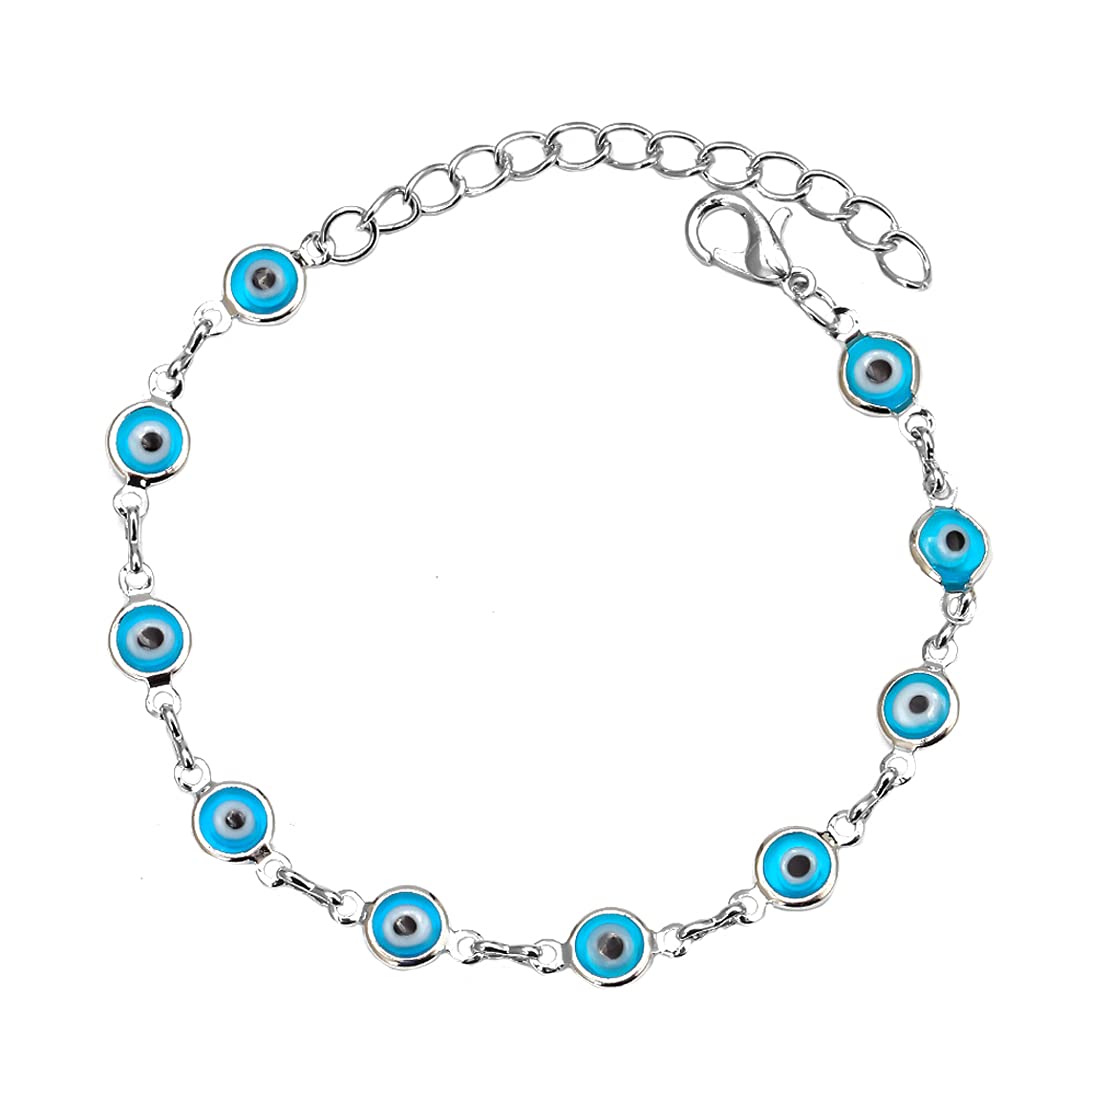 Kairangi Evil Eye Bracelet for Women Evil Eye Beads Bracelet Silver Plated Adjustable Hand Charm Unisex Bracelet for Men and Women.